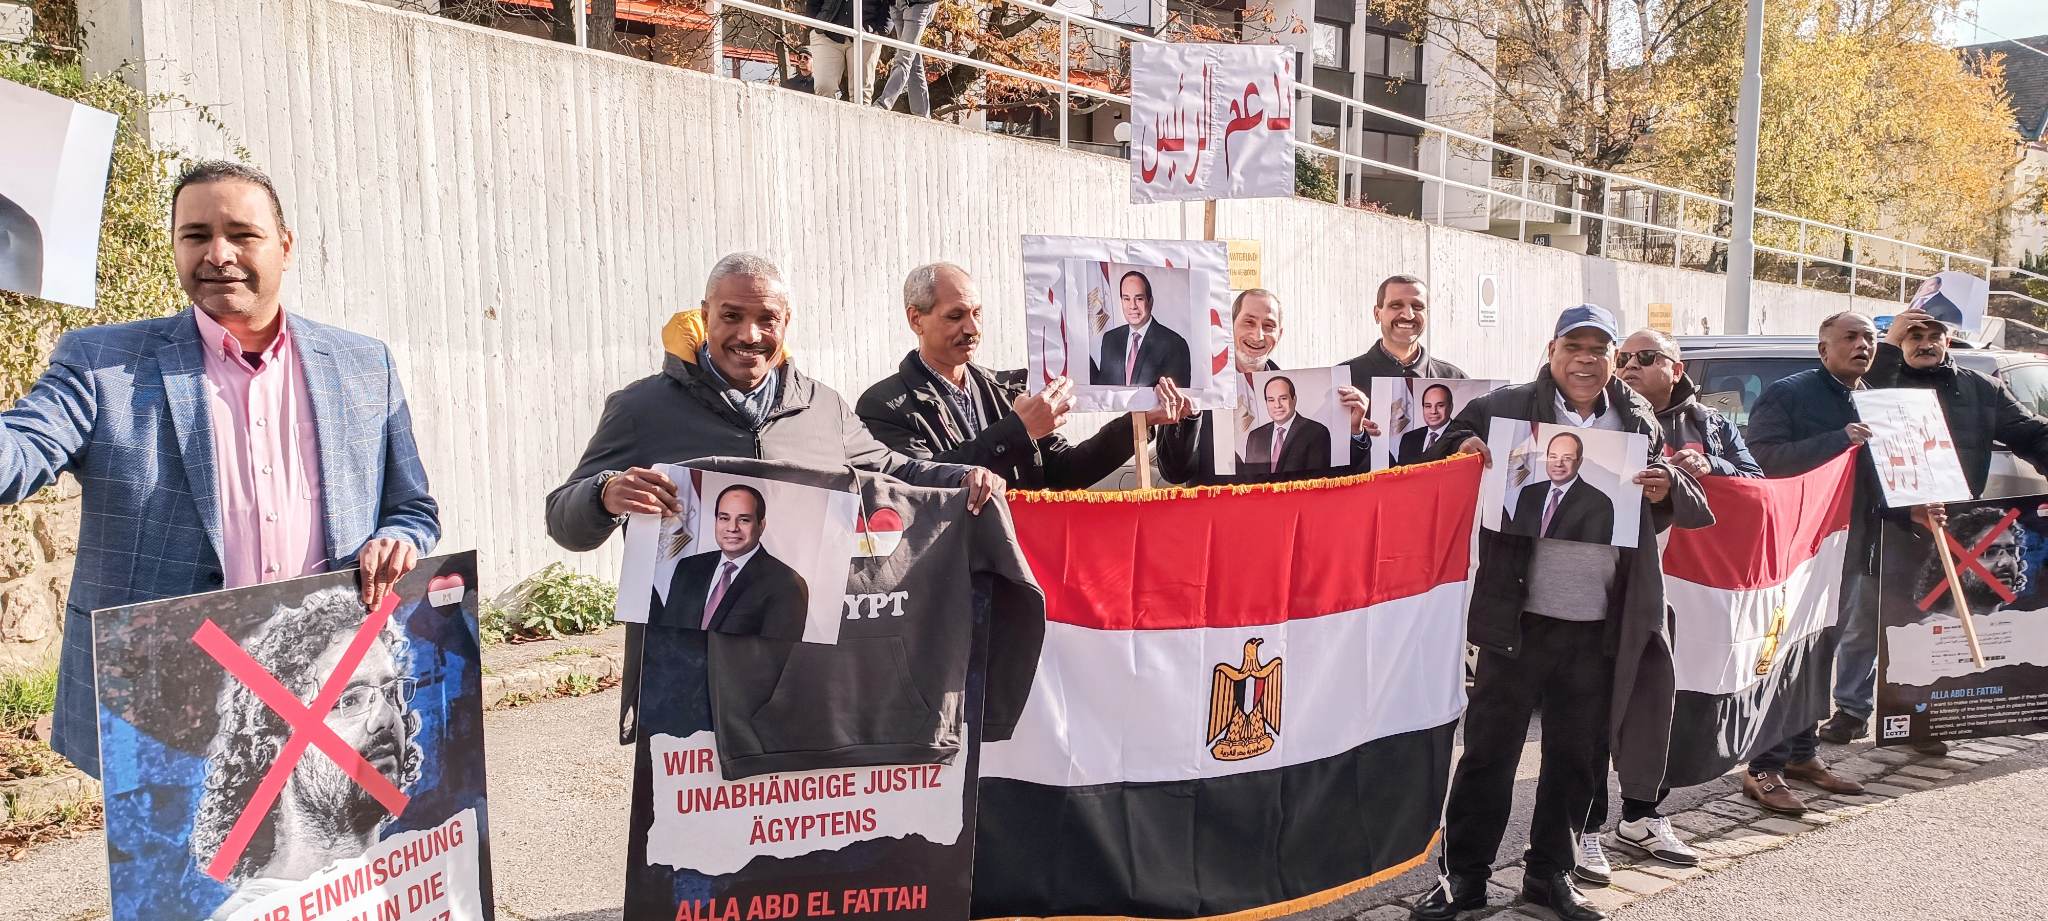 الجالية المصرية في النمسا تنظم وقفة لدعم الرئيس السيسي